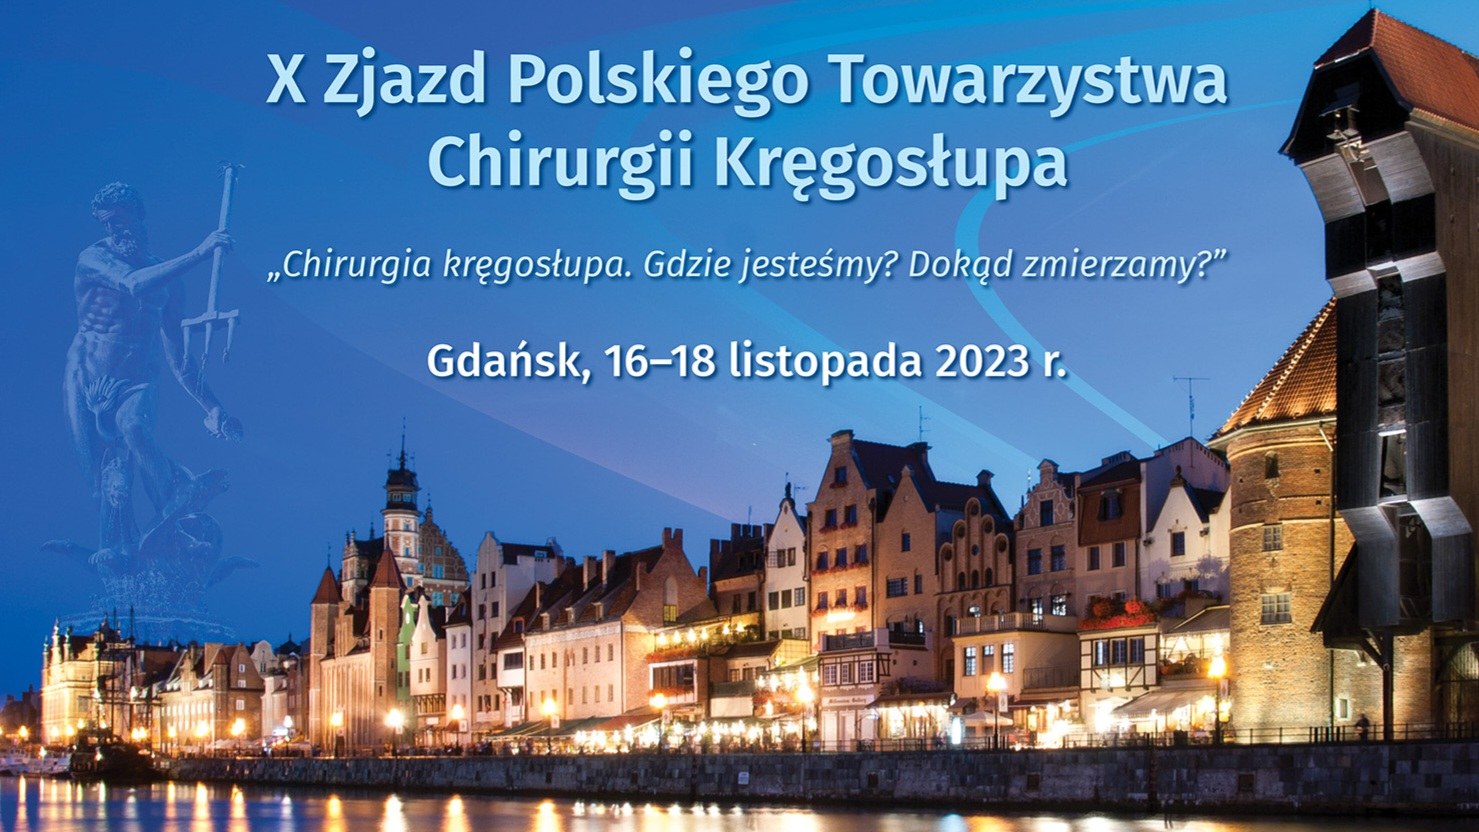 X Zjazd Polskiego Towarzystwa Chirurgii Kręgosłupa – zaproszenie